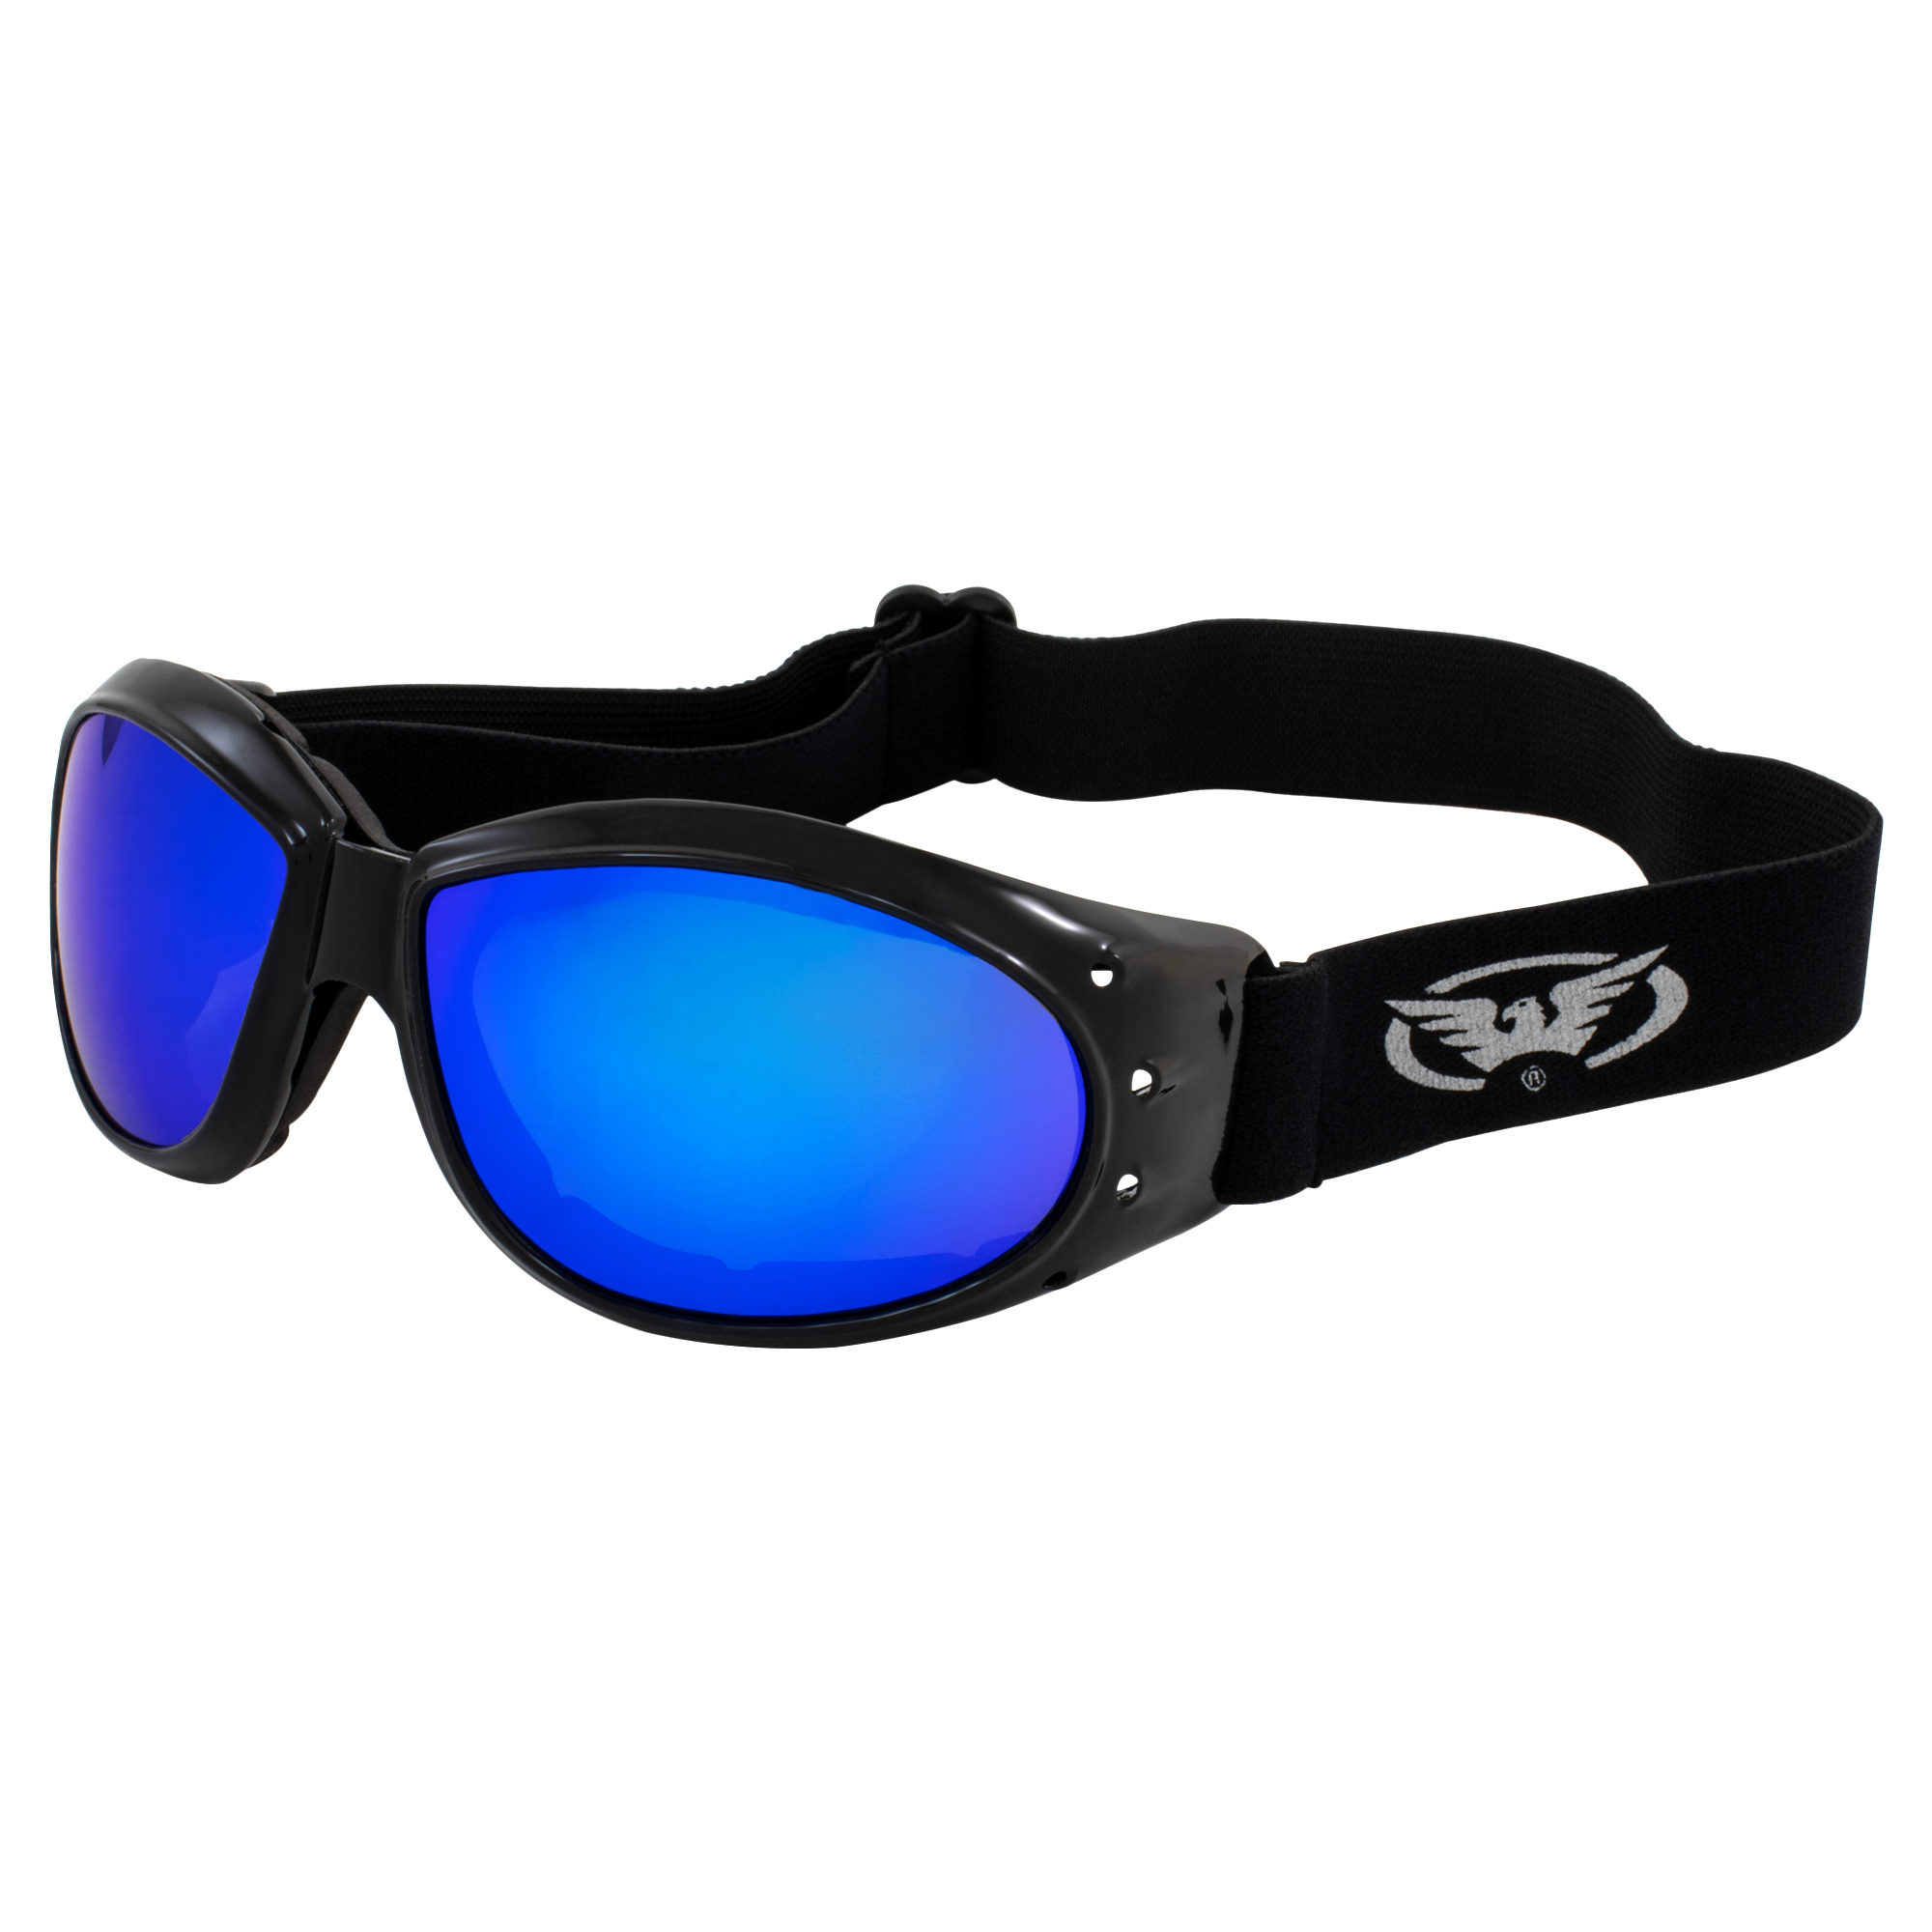 Global Vision Eliminator G-Tech Dirt Bike Motorcycle Goggles Black Frames Blue